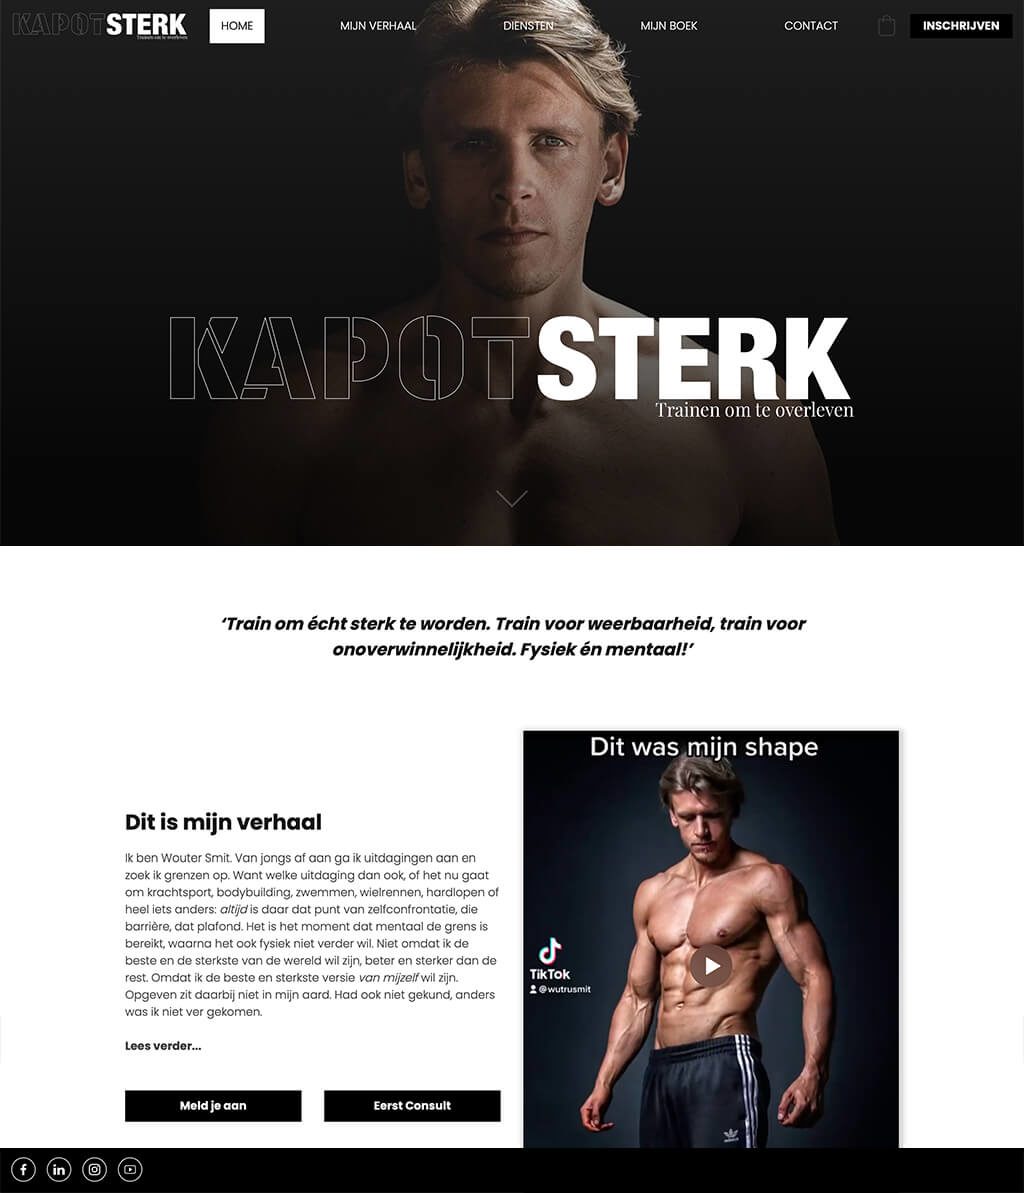 Kapotsterk.nl Website laten maken door eazyonline